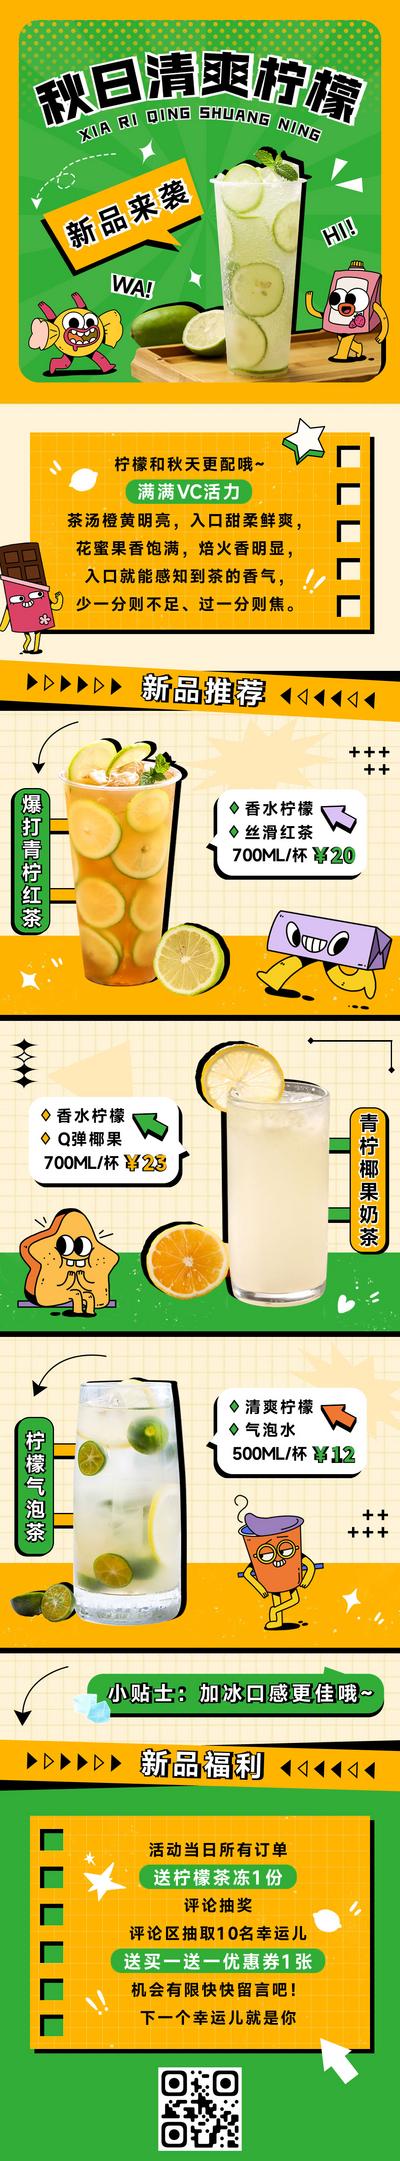 南门网 海报 长图 秋日 饮品 奶茶 柠檬茶 新品上市 趣味 卡通 插画